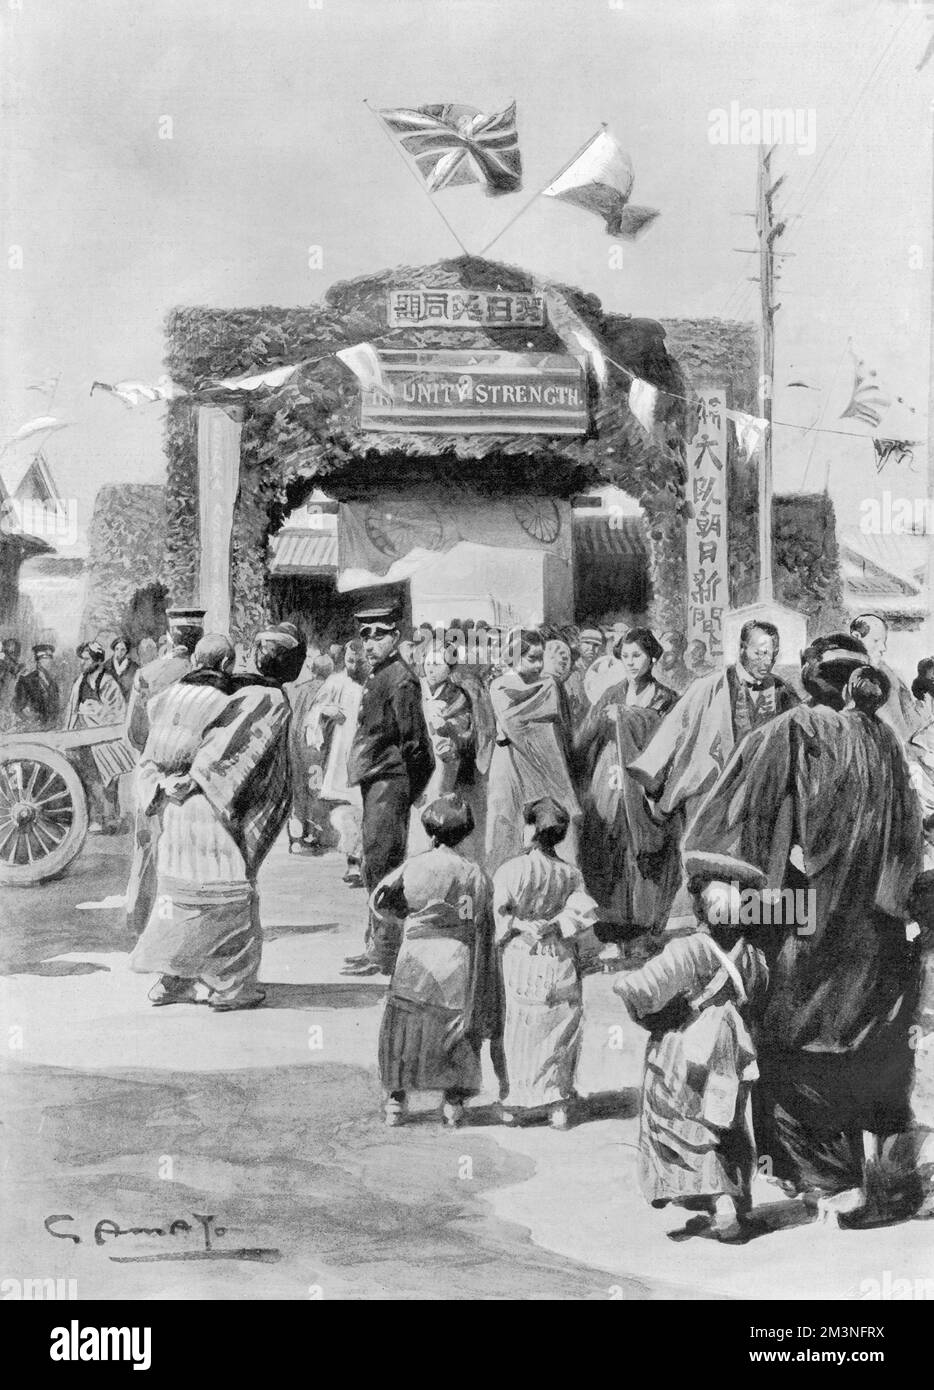 L'arco trionfale eretto a Nagasaki in onore dell'Alleanza. L'arco, che era coperto di fogliame, portava appropriati motti in inglese e giapponese, ed era sormontato dalle bandiere inglesi e giapponesi combinate. Data: 1902 Foto Stock